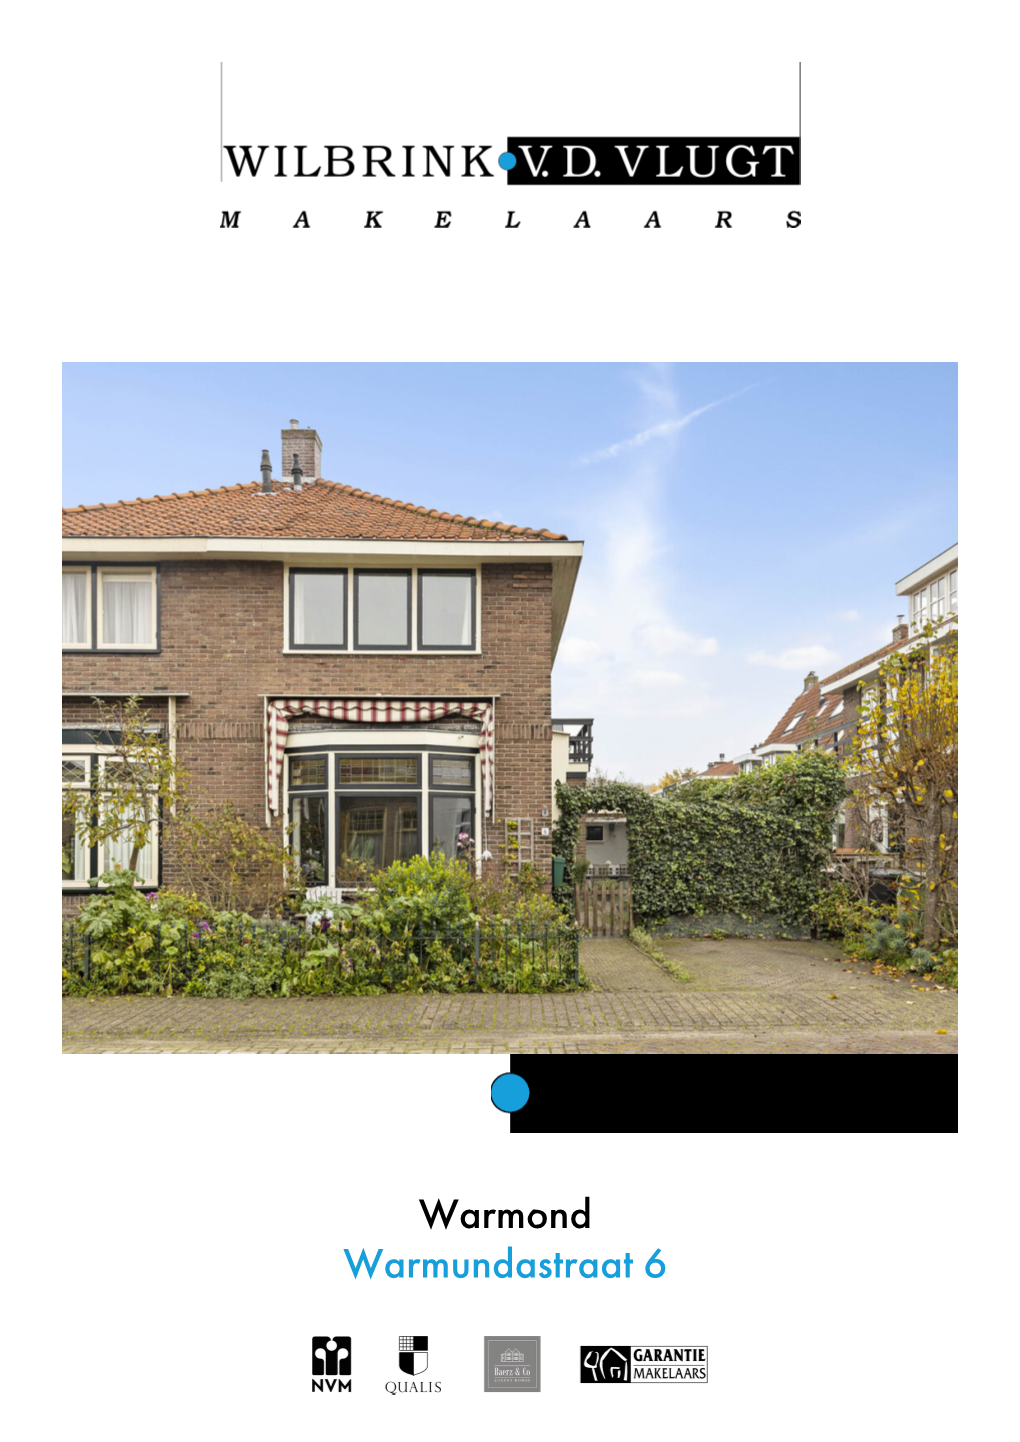 Te Koop: Warmundastraat 6 in Warmond